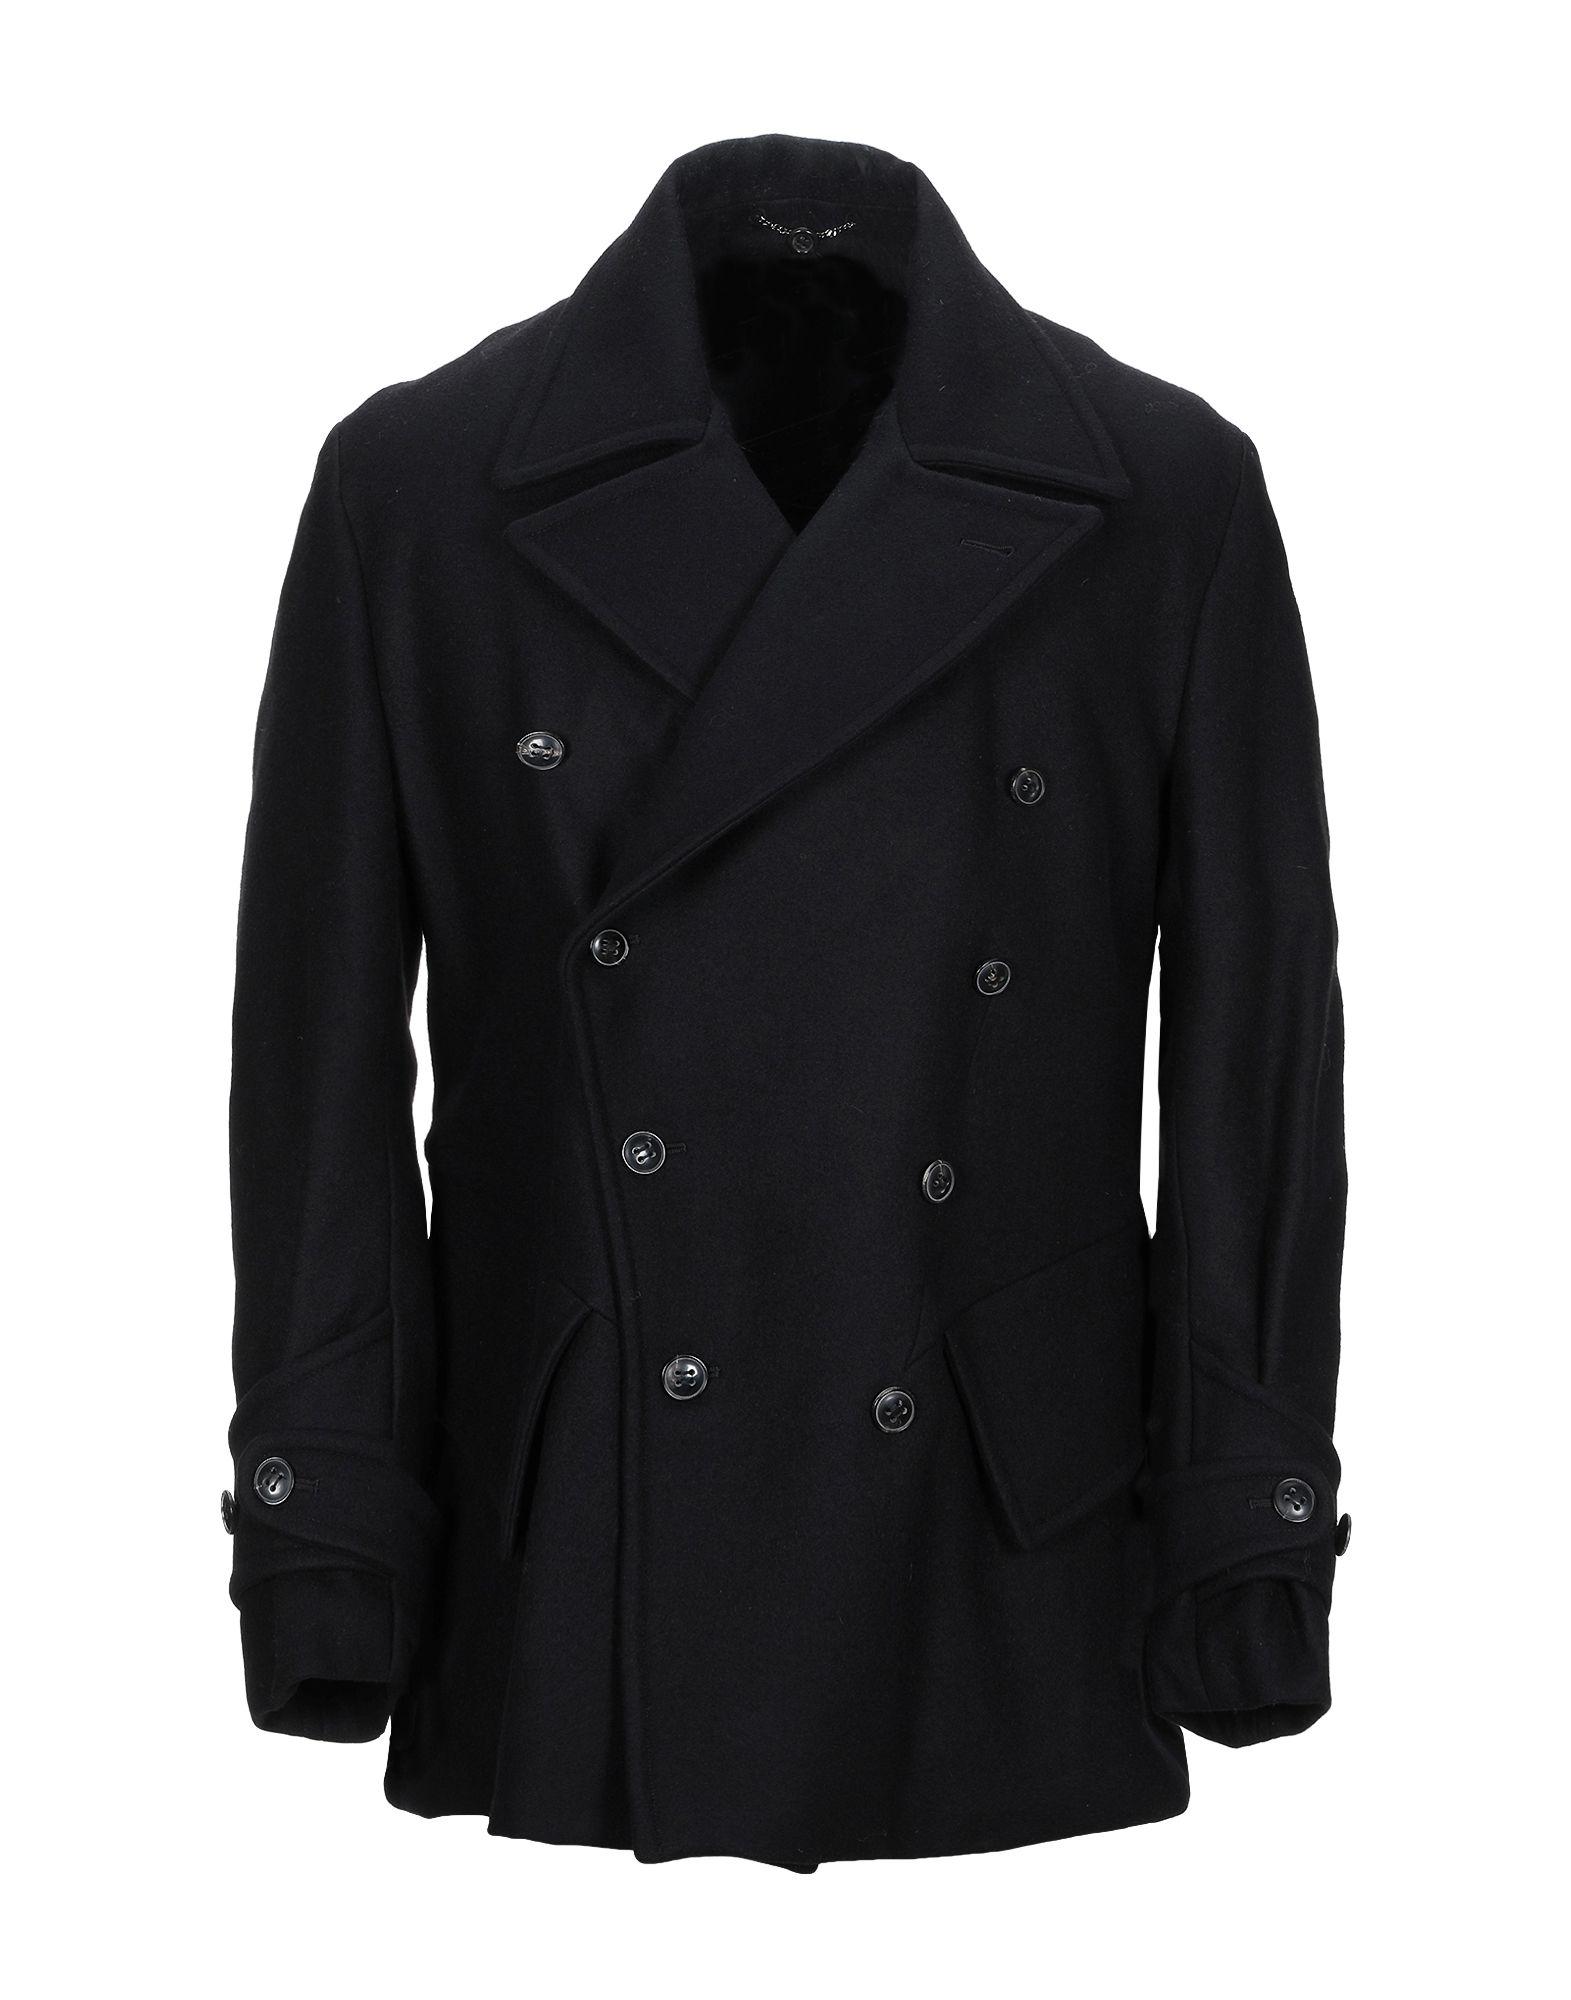 Saint Laurent Wool Coat in Black for Men - Lyst